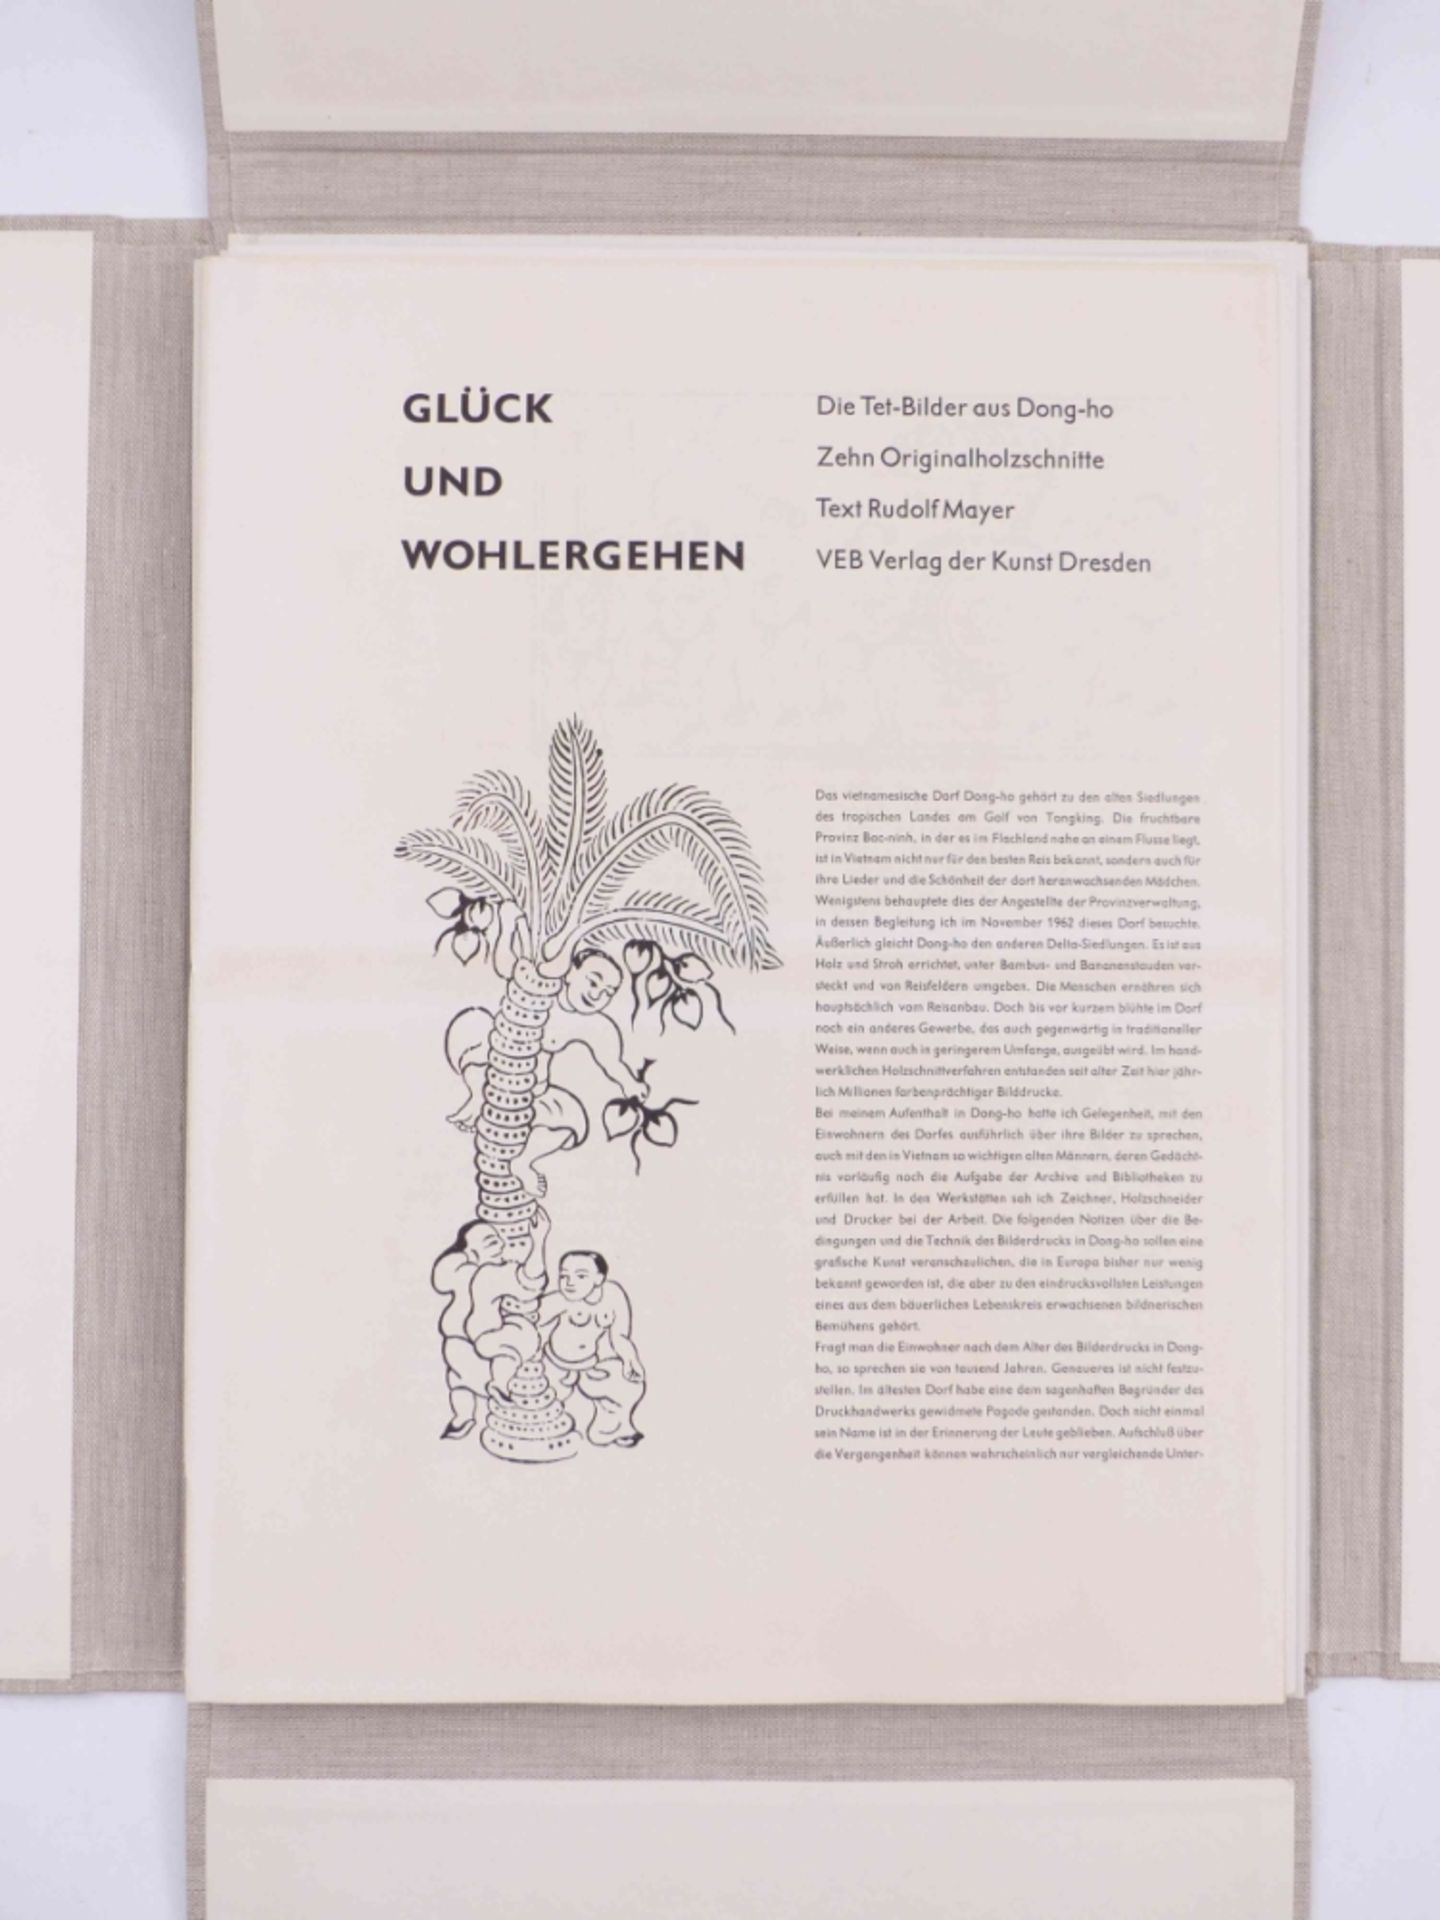 Rudolf Meyer (Text): Glück und Wohlergehen, Die Tet-Bilder aus Dong-ho - Image 2 of 6